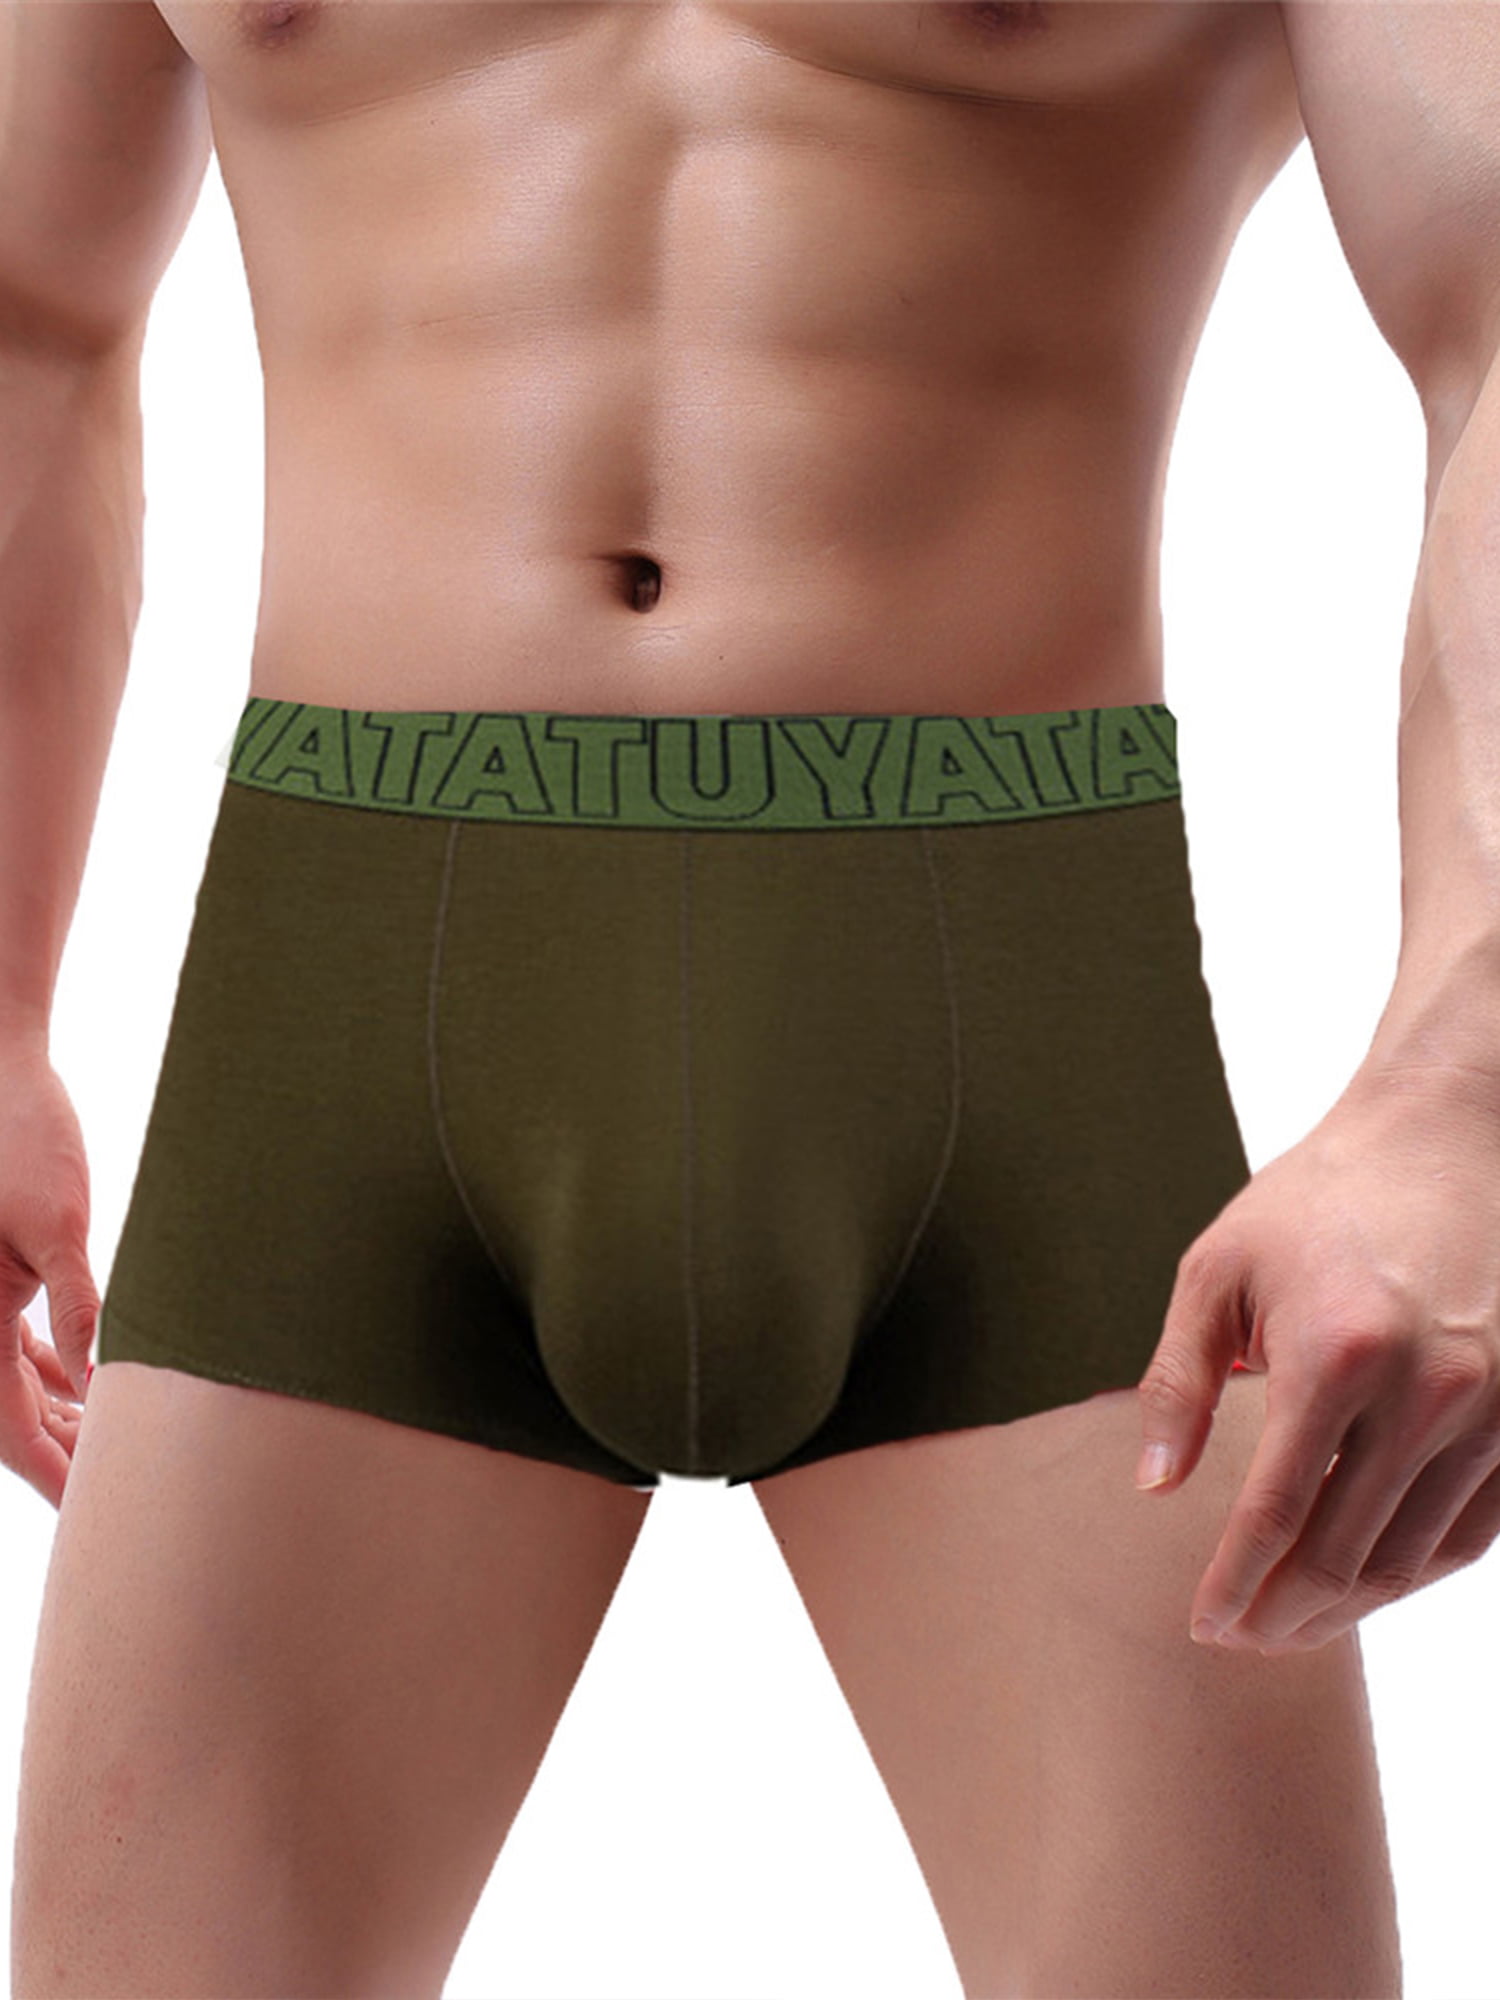 Men Plus Size Underwear Briefs Shorts Bulge Pouch Soft Modal Underpants